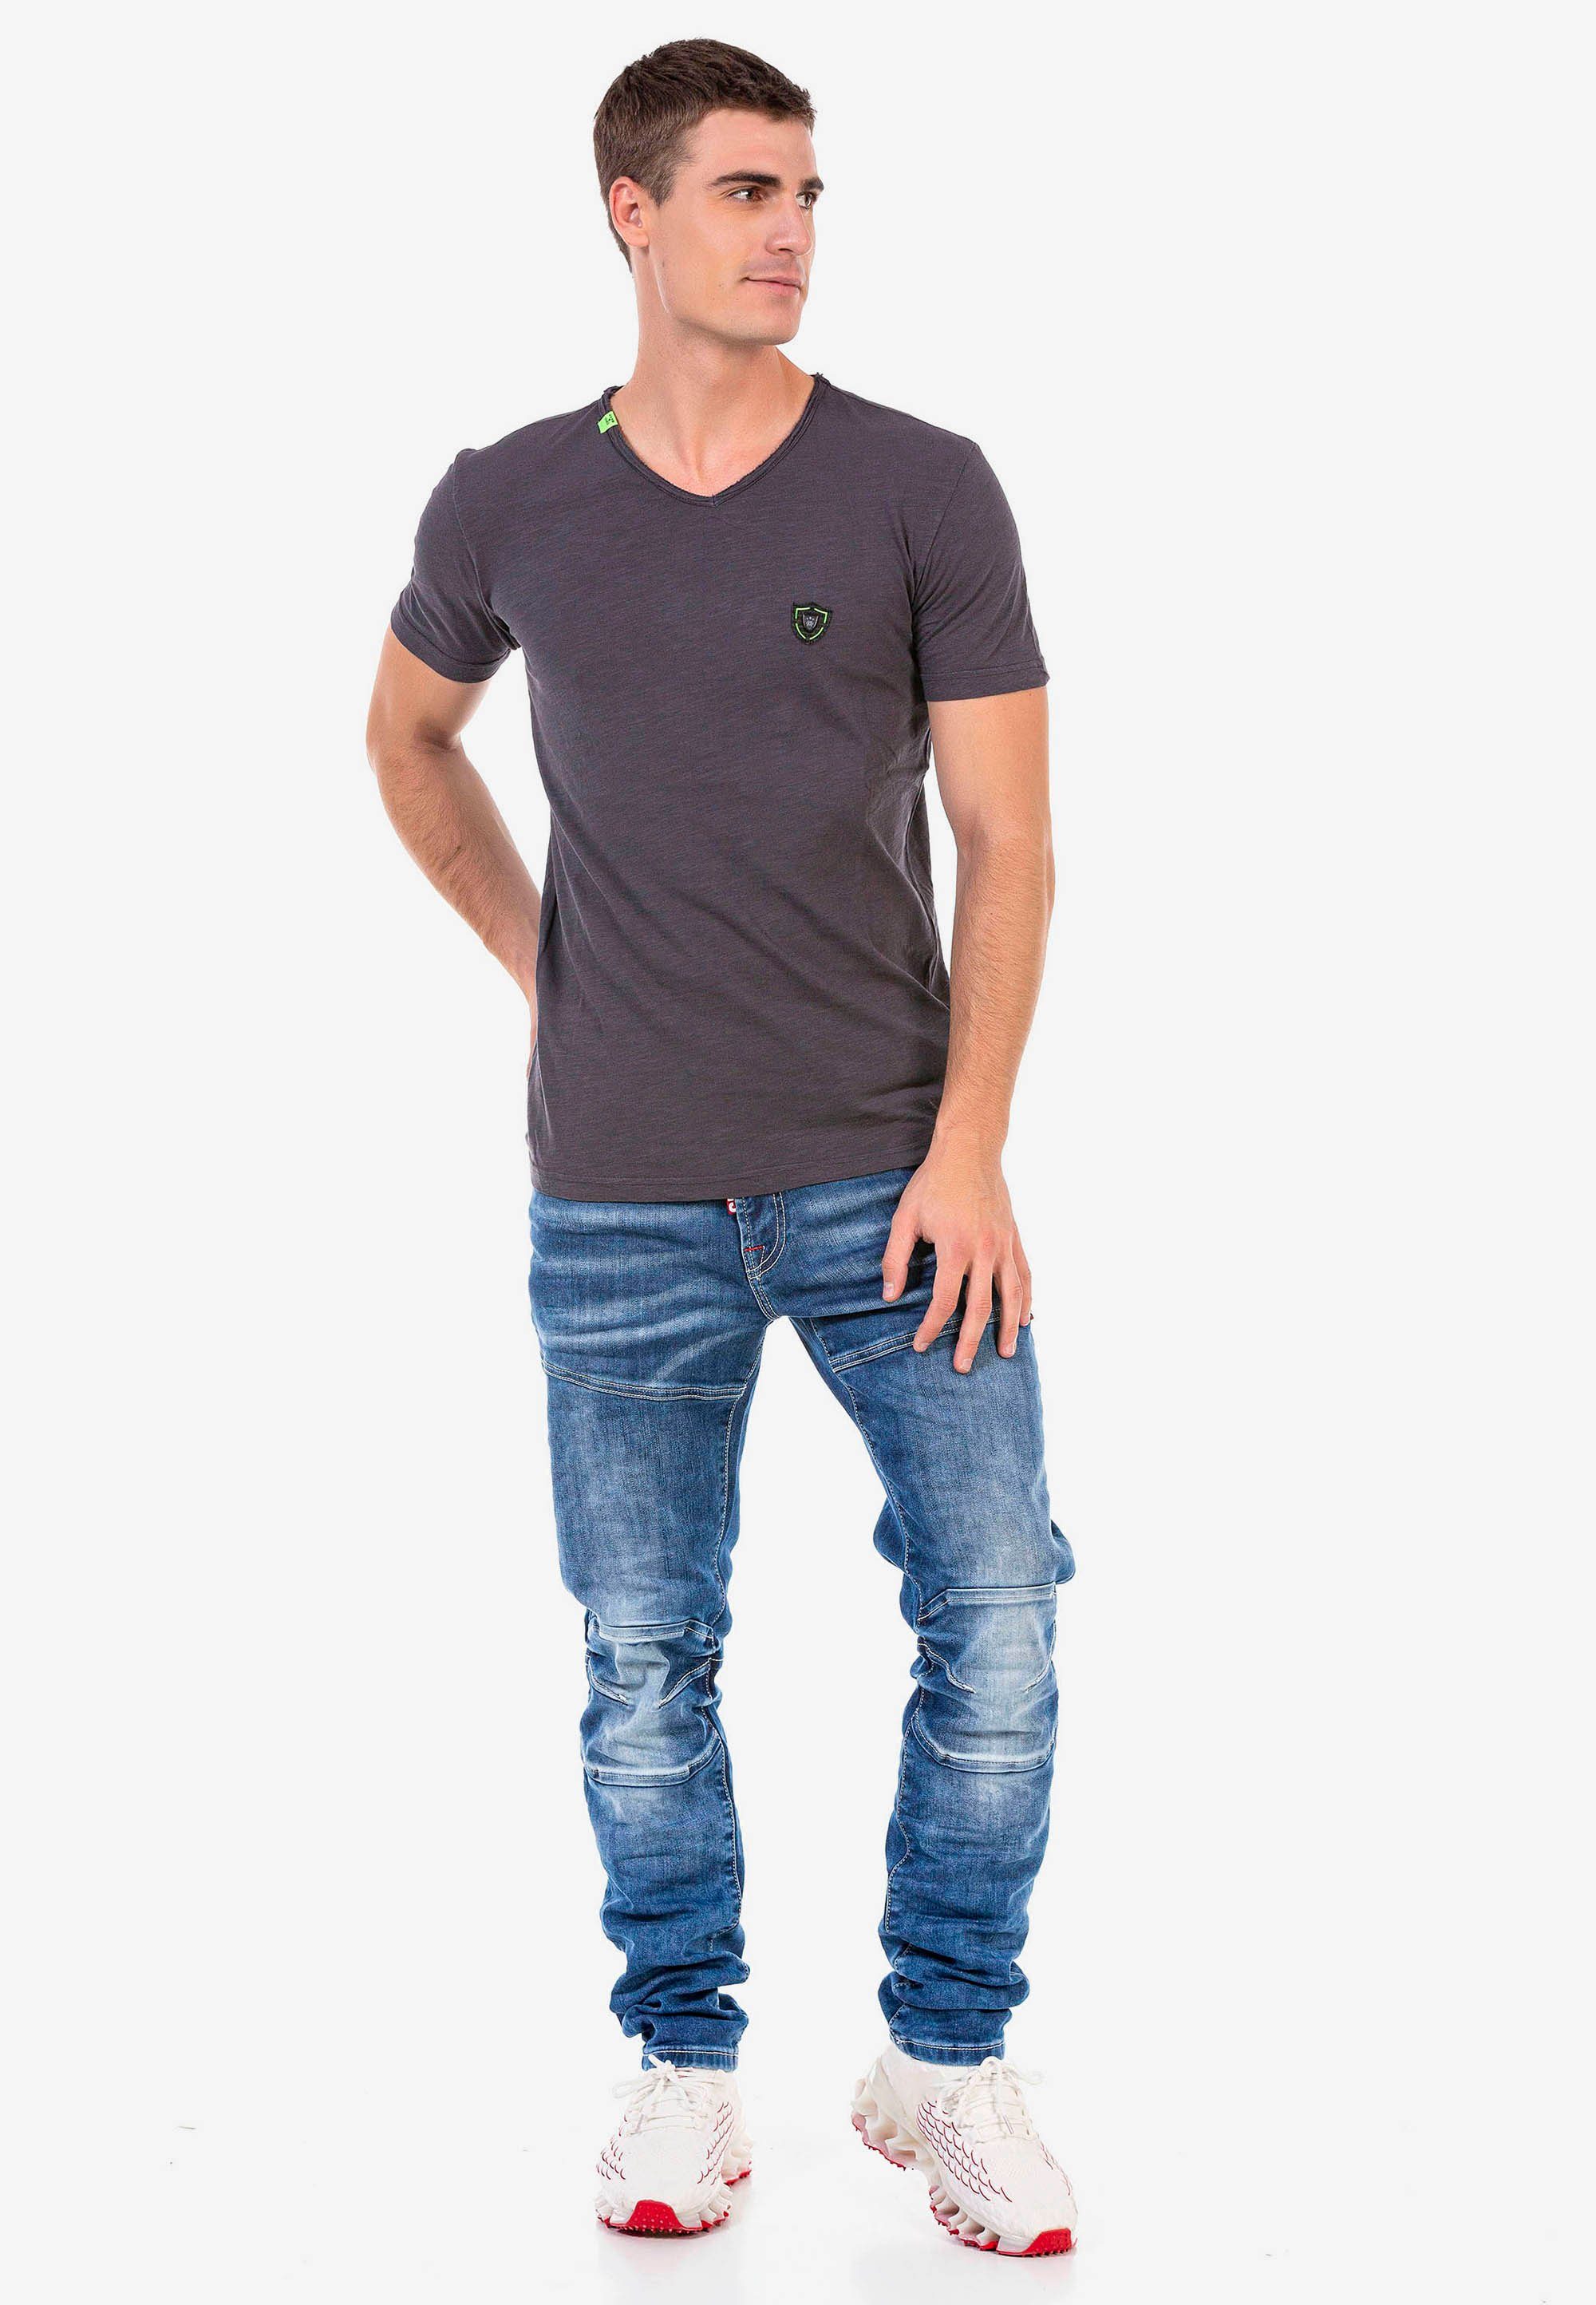 & Cipo trendigen Baxx mit Straight-Jeans Ziernähten